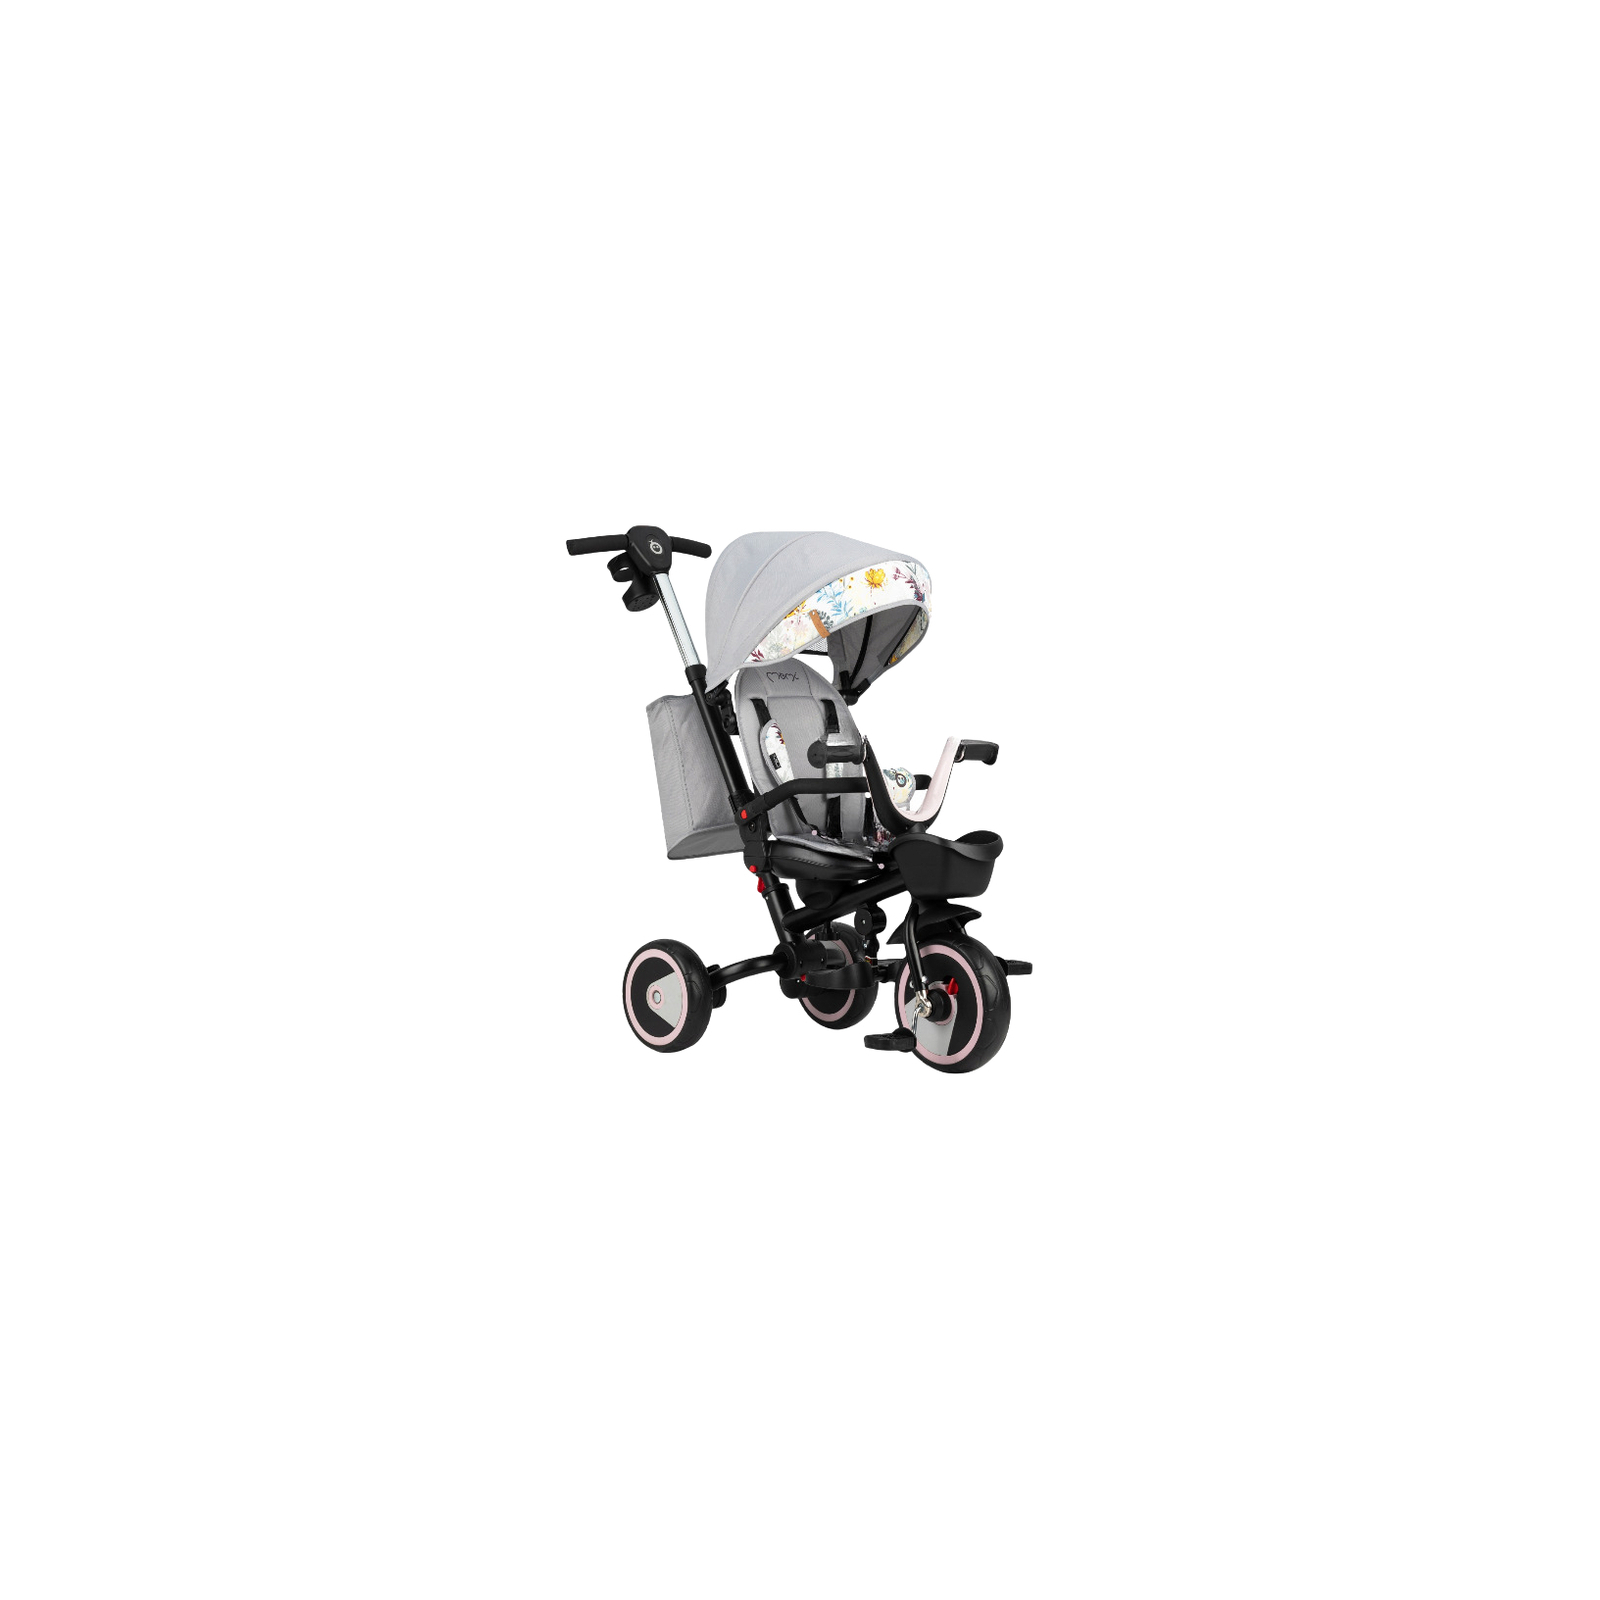 Детский велосипед MoMi Invidia 5 в 1 Серый (ROTR00001)